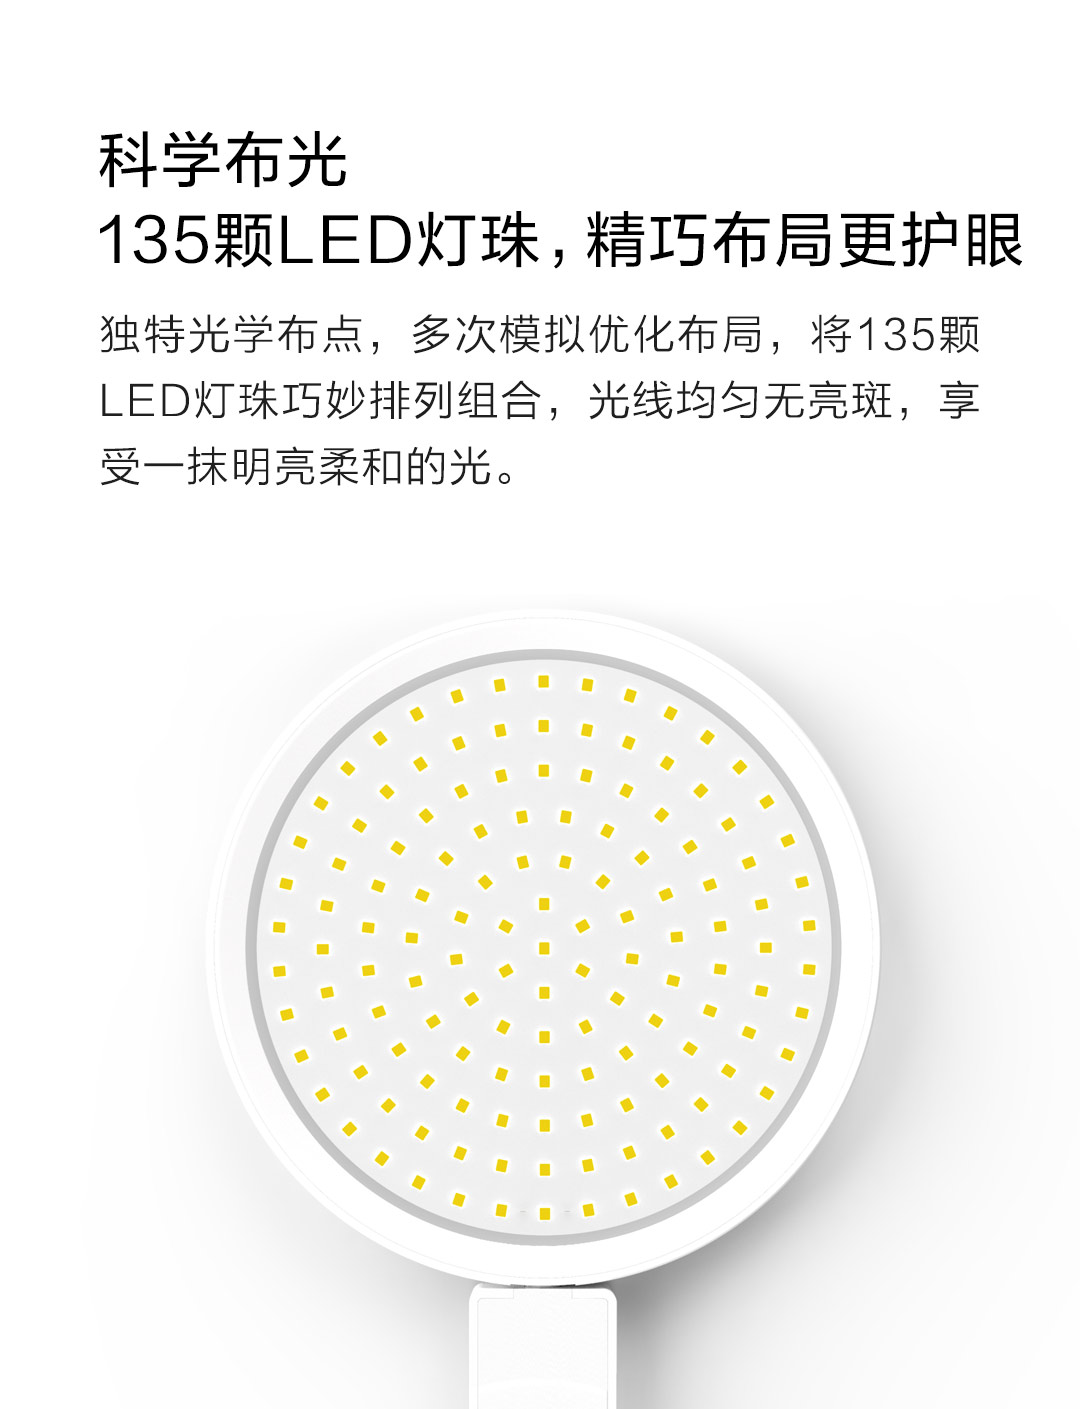 Lámpara Xiaomi Mijia Philips, ahora con personalización de movimientos